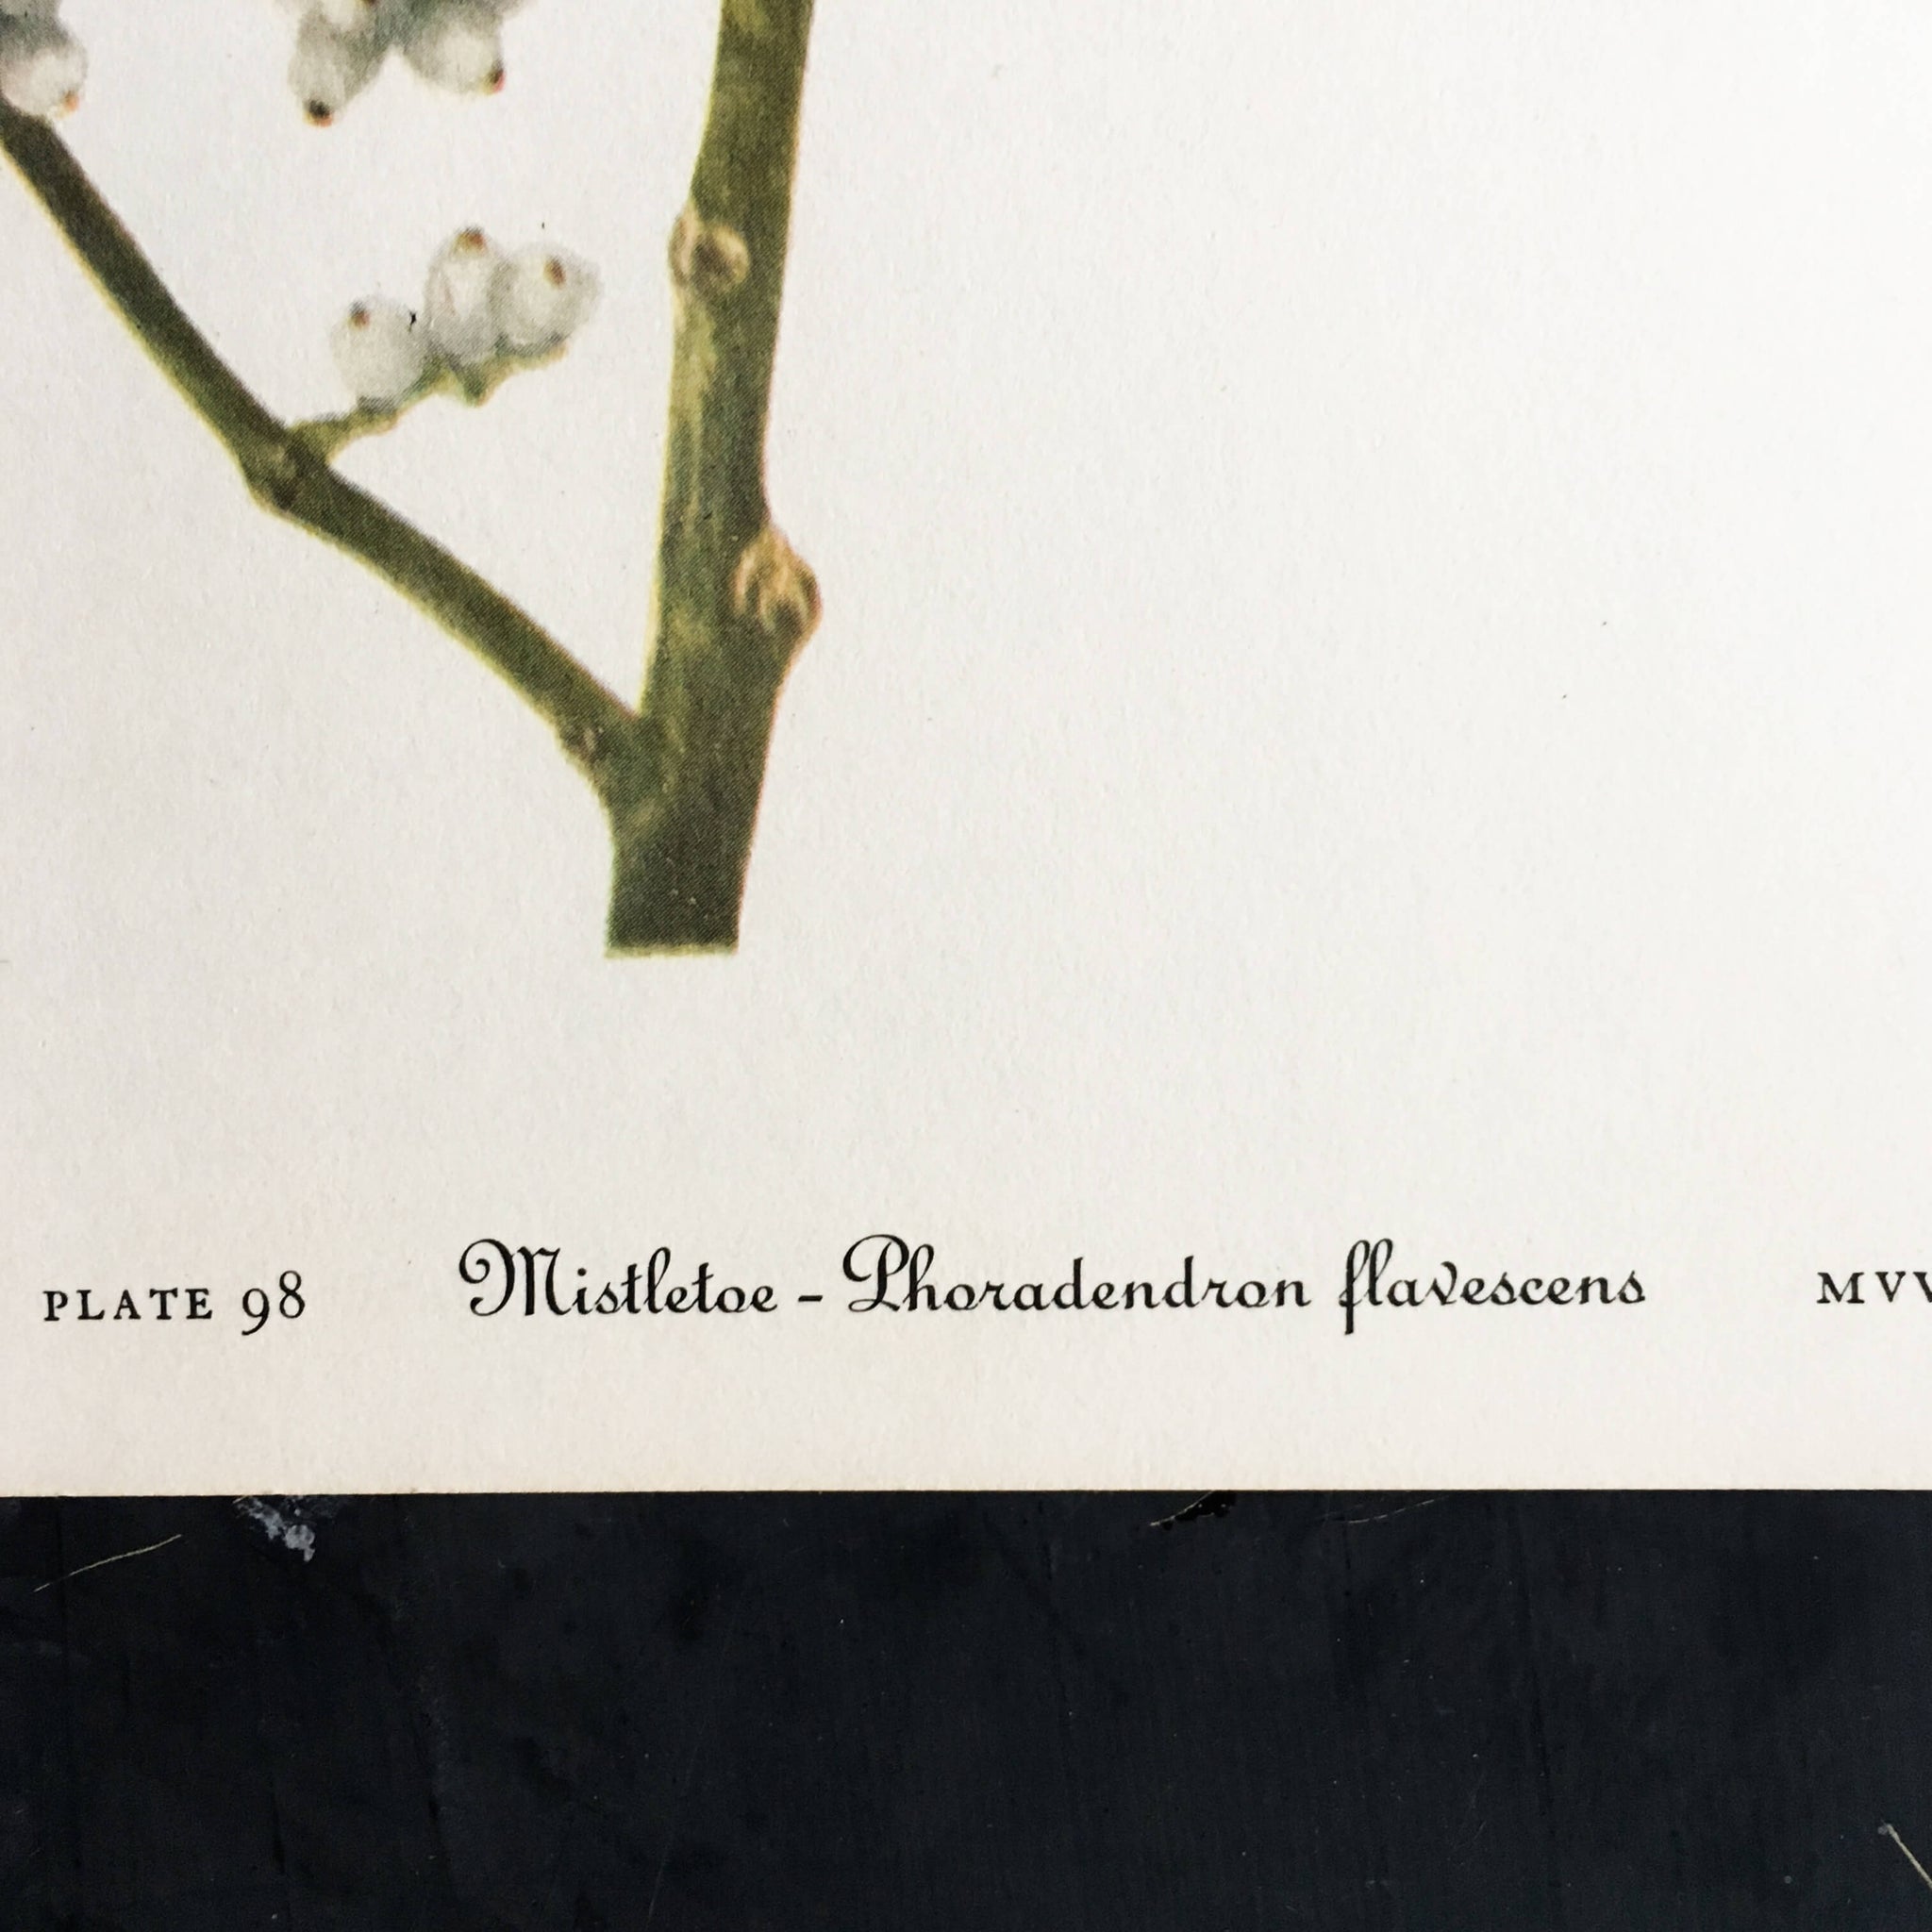 Vintage Mistletoe Botanical Print - Mistletoe and Bastard Toad-flax Plant Prints -1950s Wild Flowers of America Bookplates